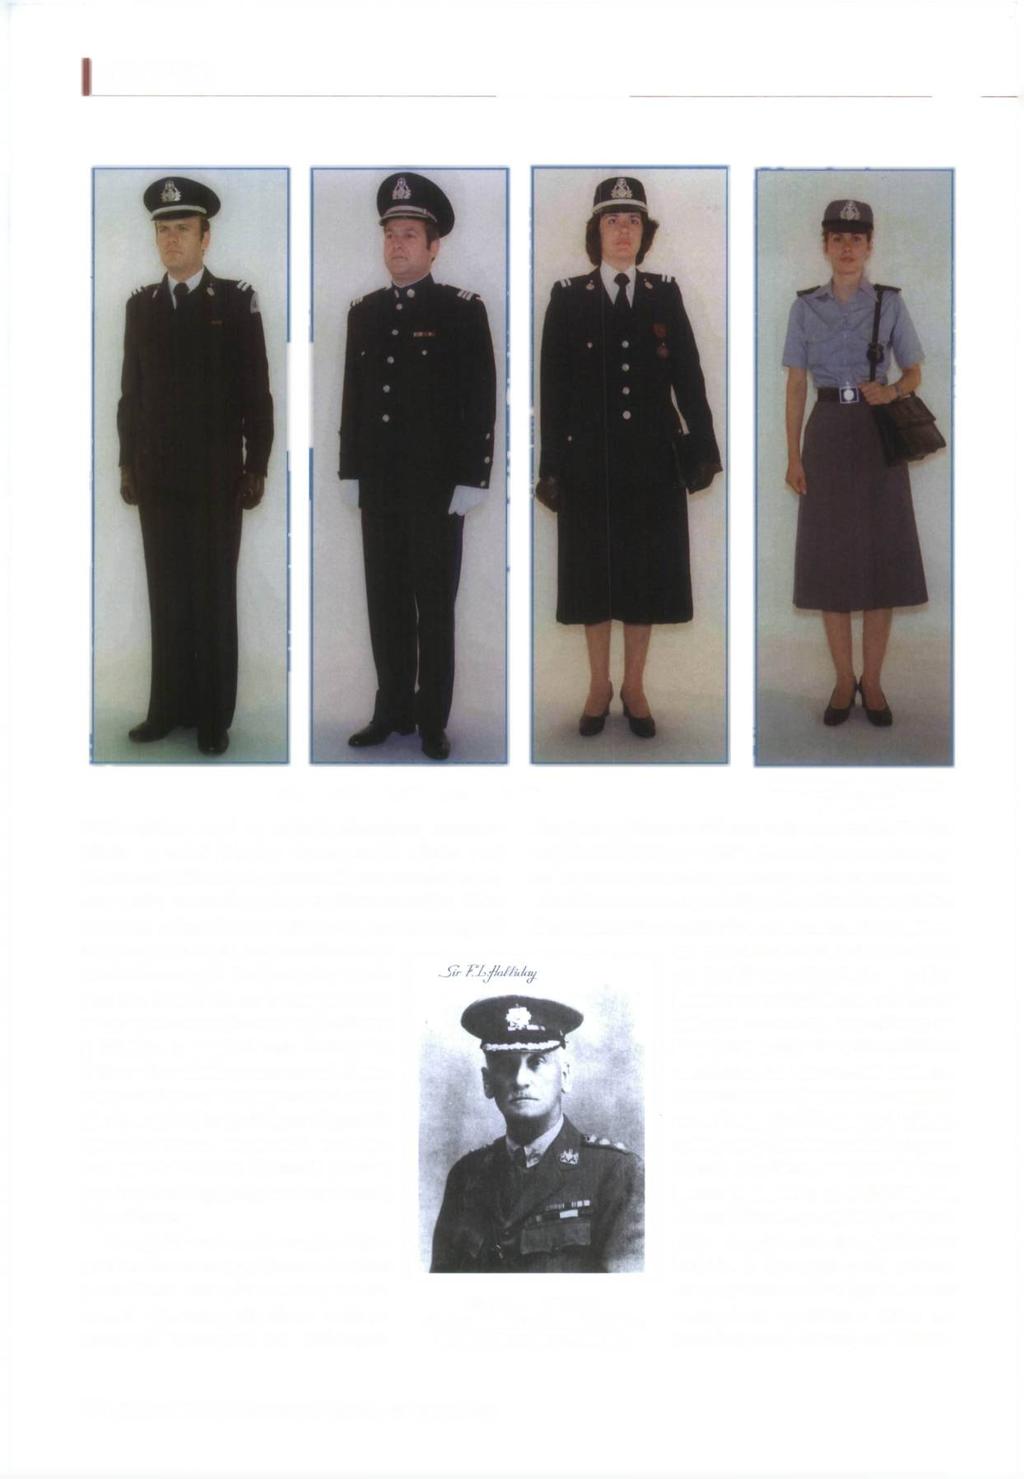 ΙΣΤΟΡΙΚΟ Αξιωματικοί Αατυνομίας Πόλεων με χειμερινή στολή 1940 περίοδος, παρά τις σοβαρές δυσχέρειες, χαρακτηρίζεται ως εποχή μέγιστης δημιουργίας και δράσης της Αστυνομίας Πόλεων.